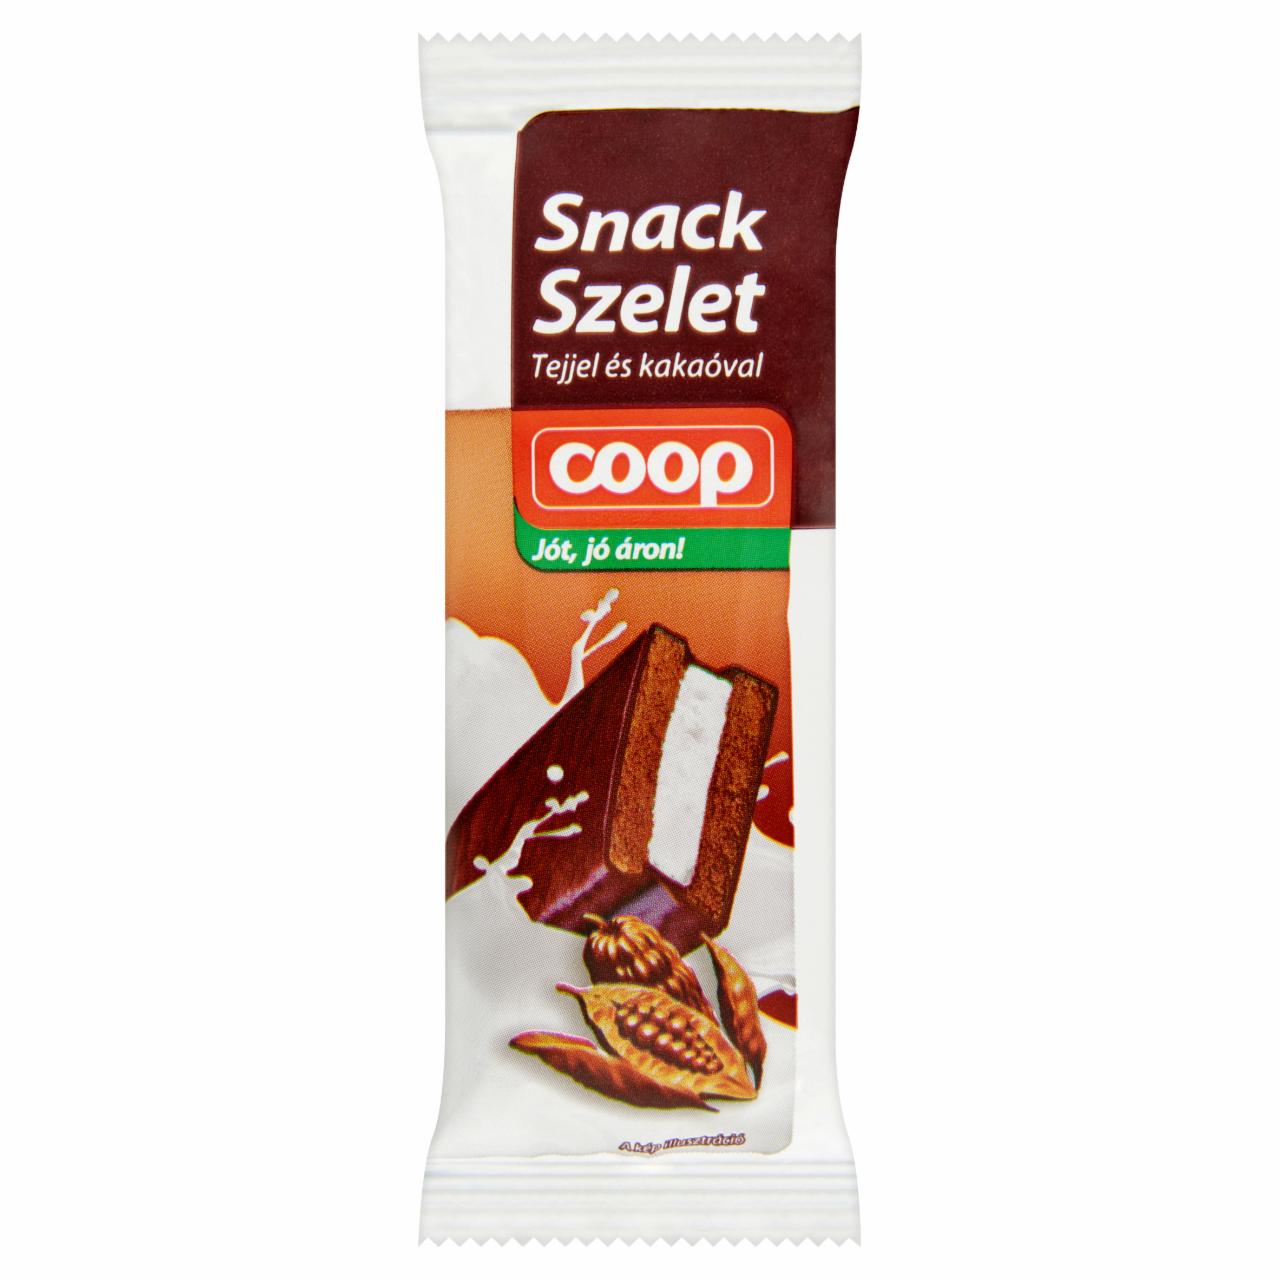 Képek - Coop snack szelet tejjel és kakaóval 30 g